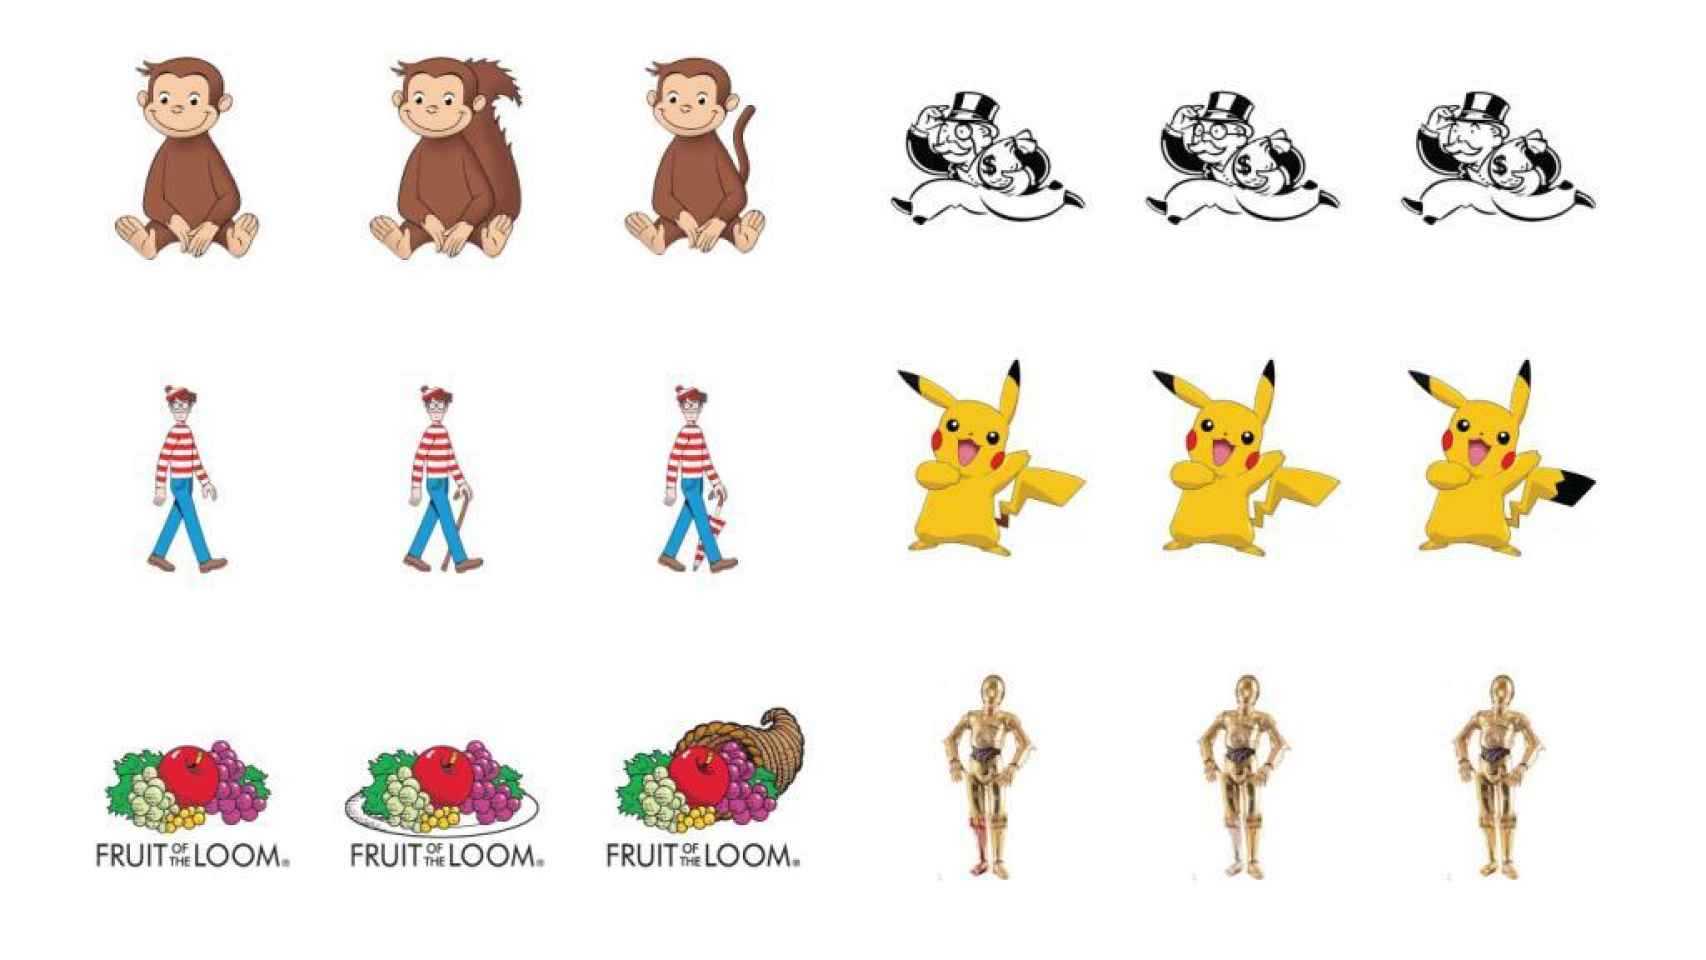 Las versiones correctas son: Jorge el curioso (izquierda), Mr. Monopoly (derecha), ¿Dónde está Wally ? (centro), Pikachu (izquierda), Fruit of the Loom (izquierda), C-3PO (centro).